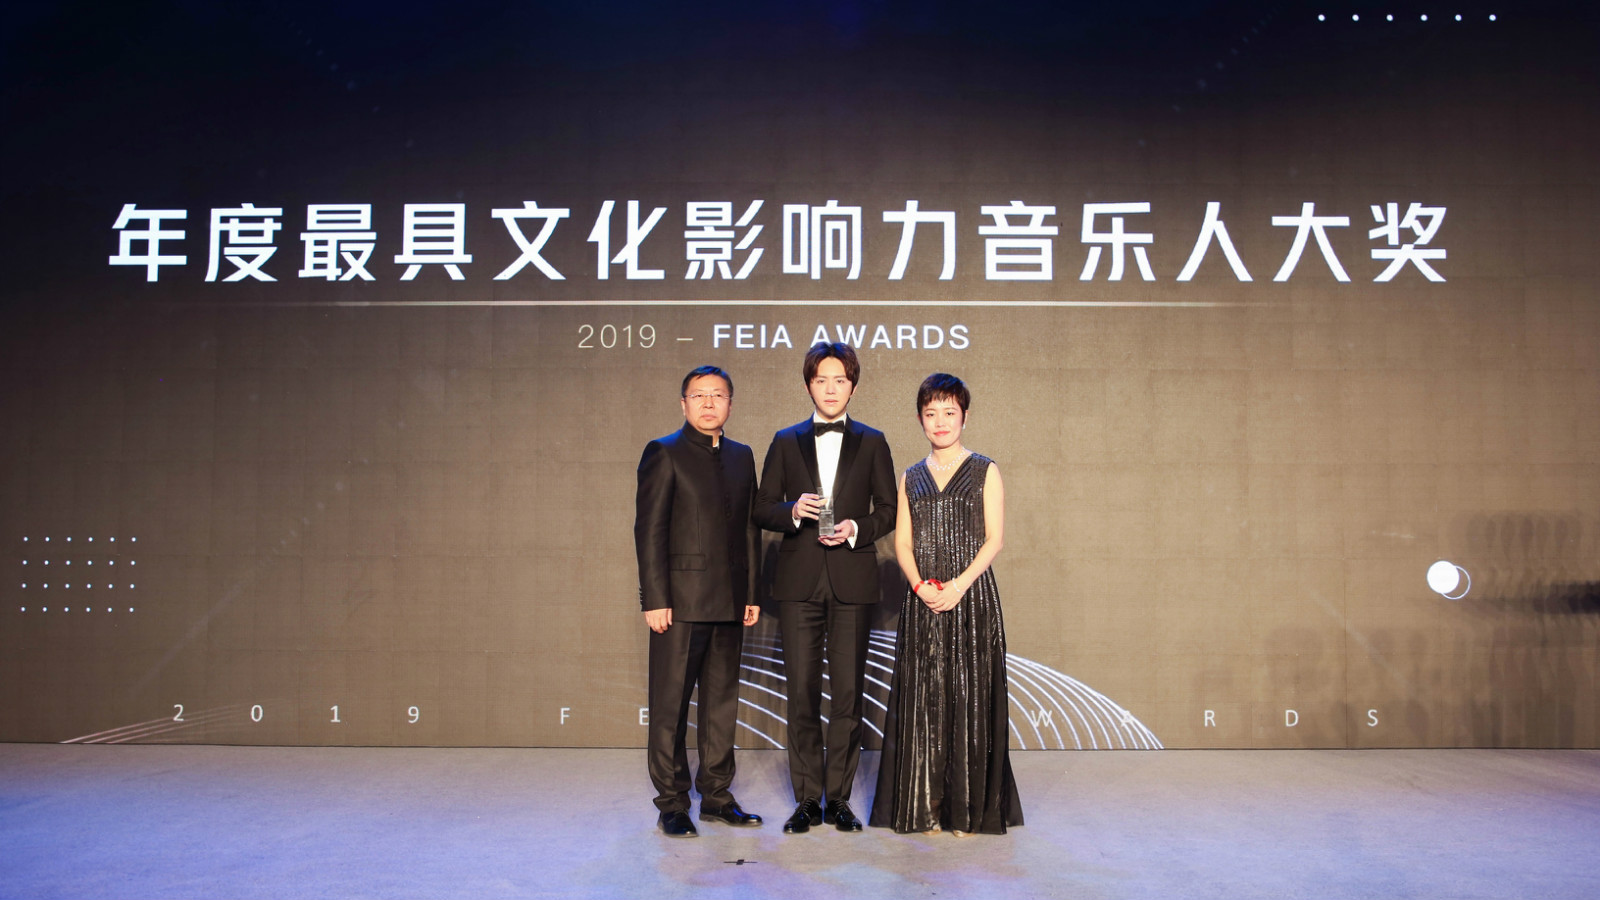 李云迪帅气亮相FEIA颁奖盛典 实力收获“最具文化影响力音乐人”